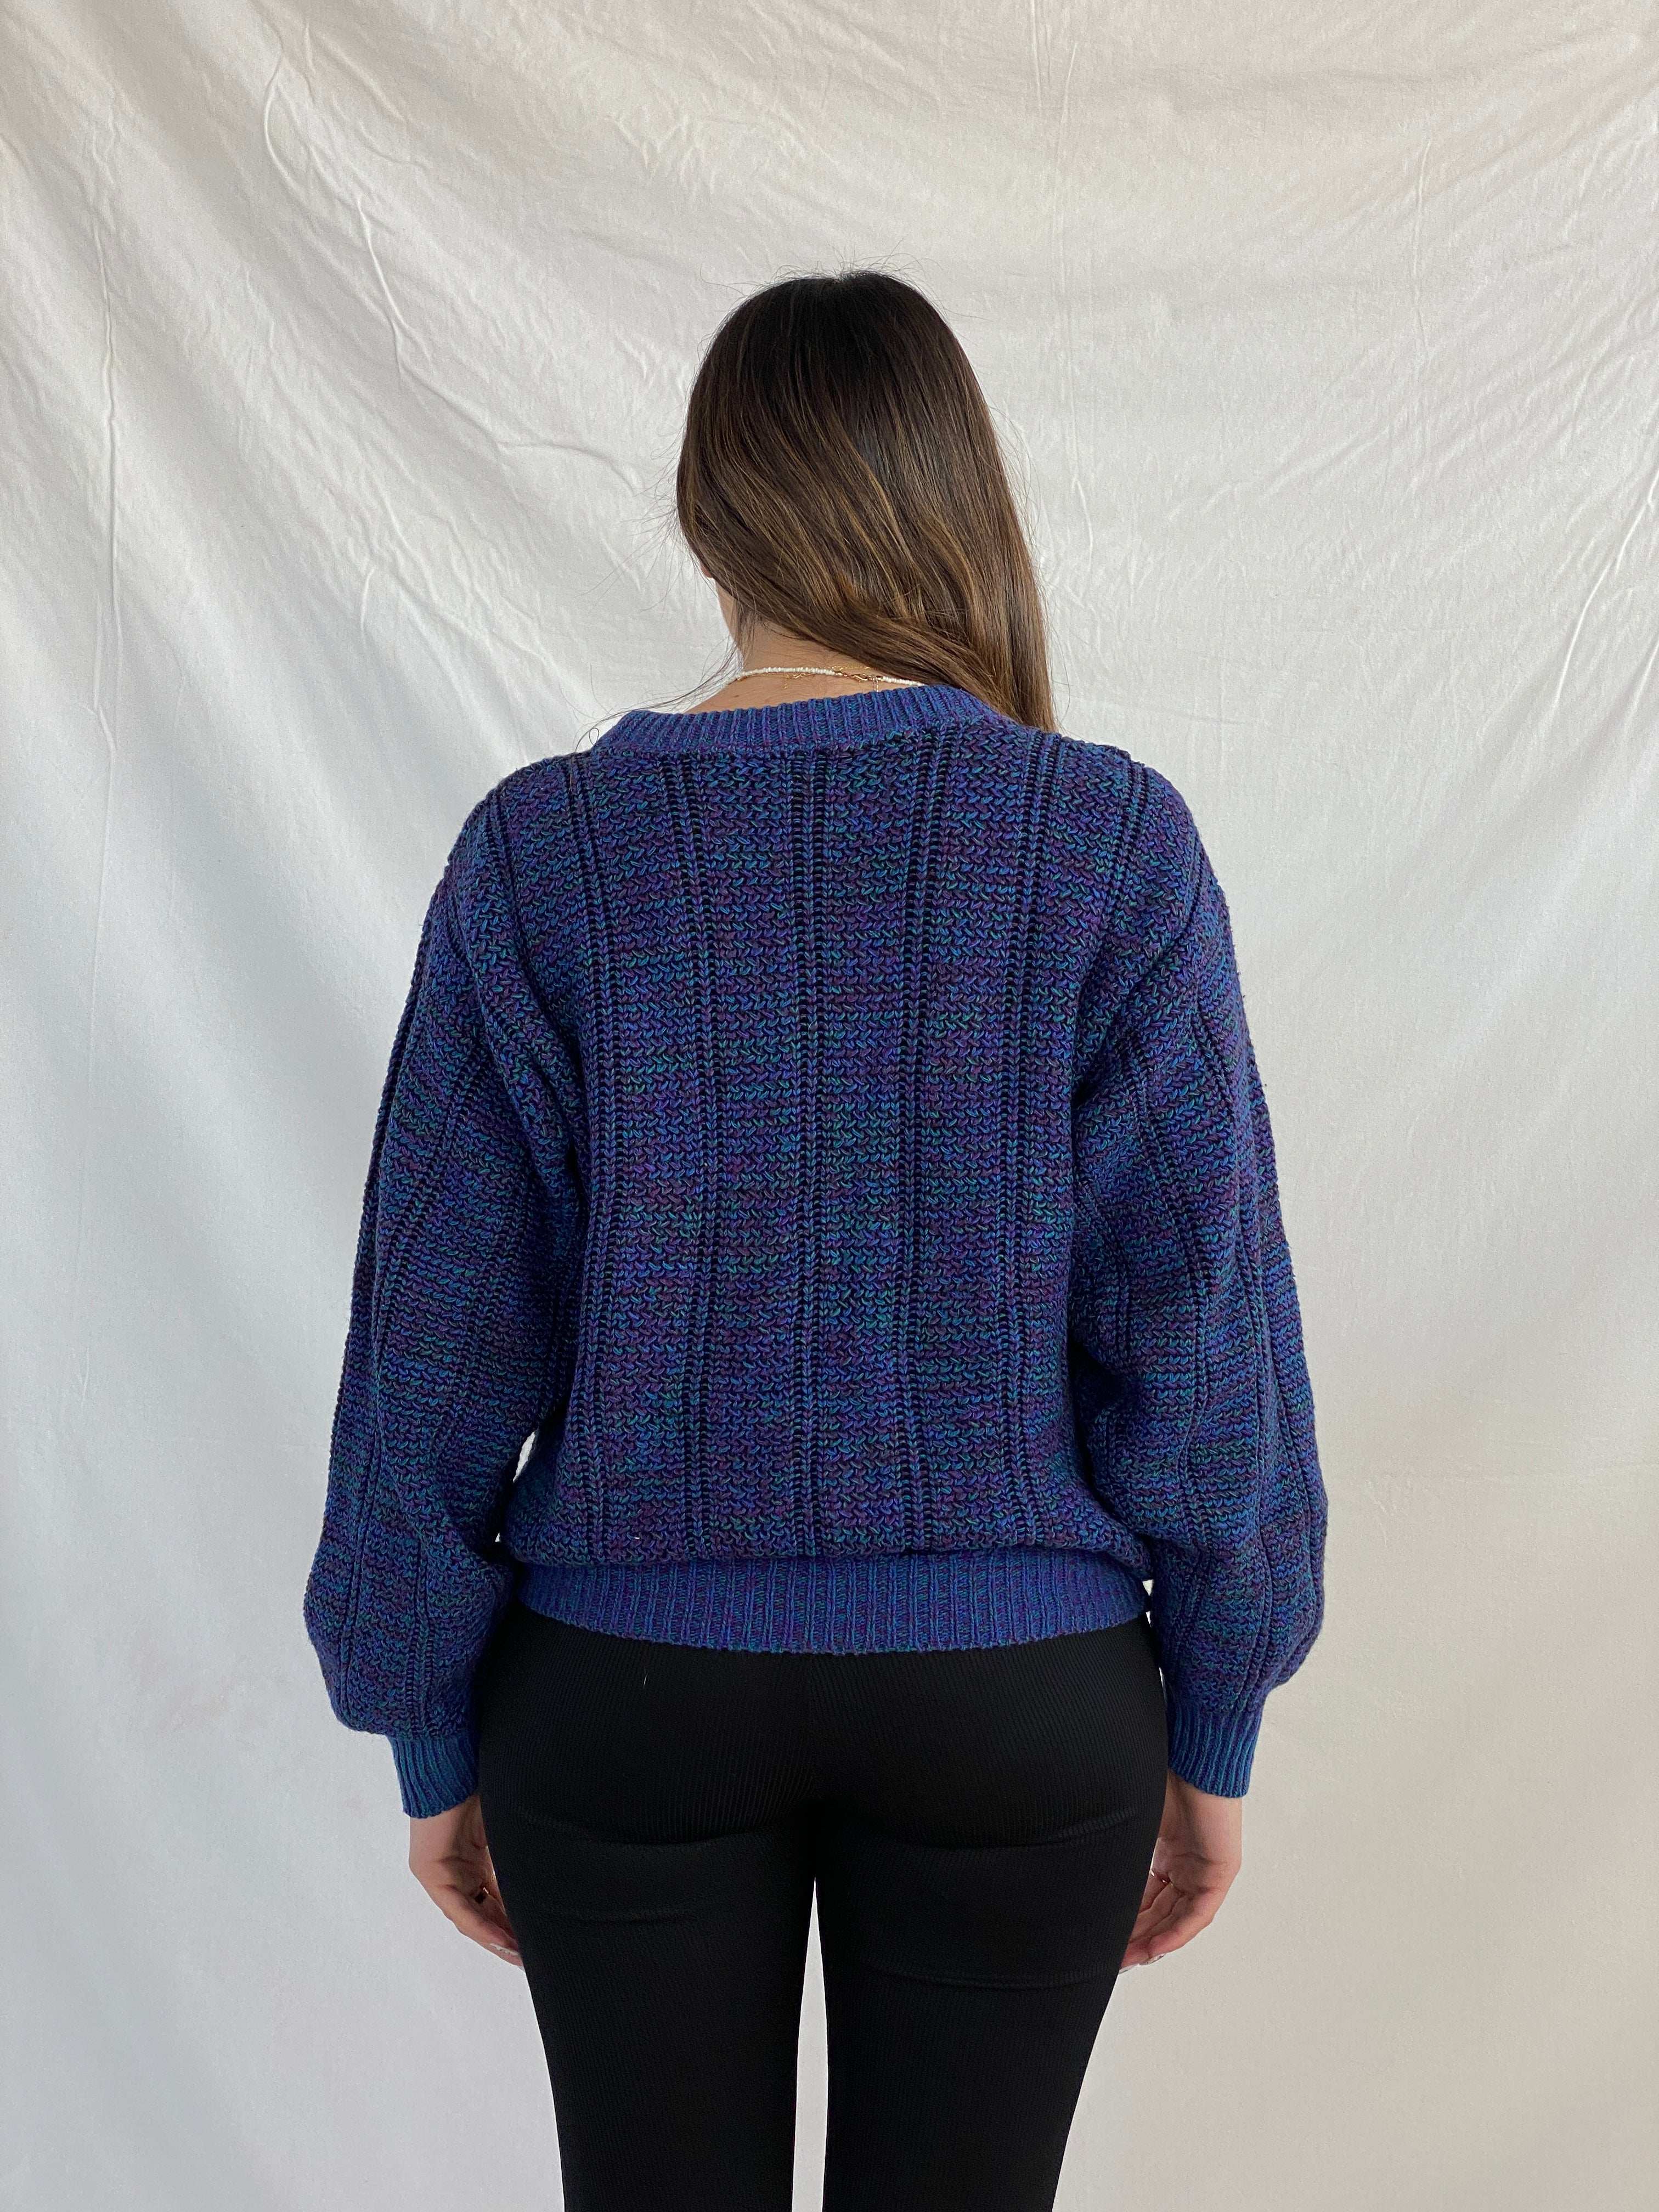 Vintage APPARATUS Knitted Sweater - Balagan Vintage Sweater 90s, Juana, knitted sweater, NEW IN, oversized sweater, printed sweater, sweater